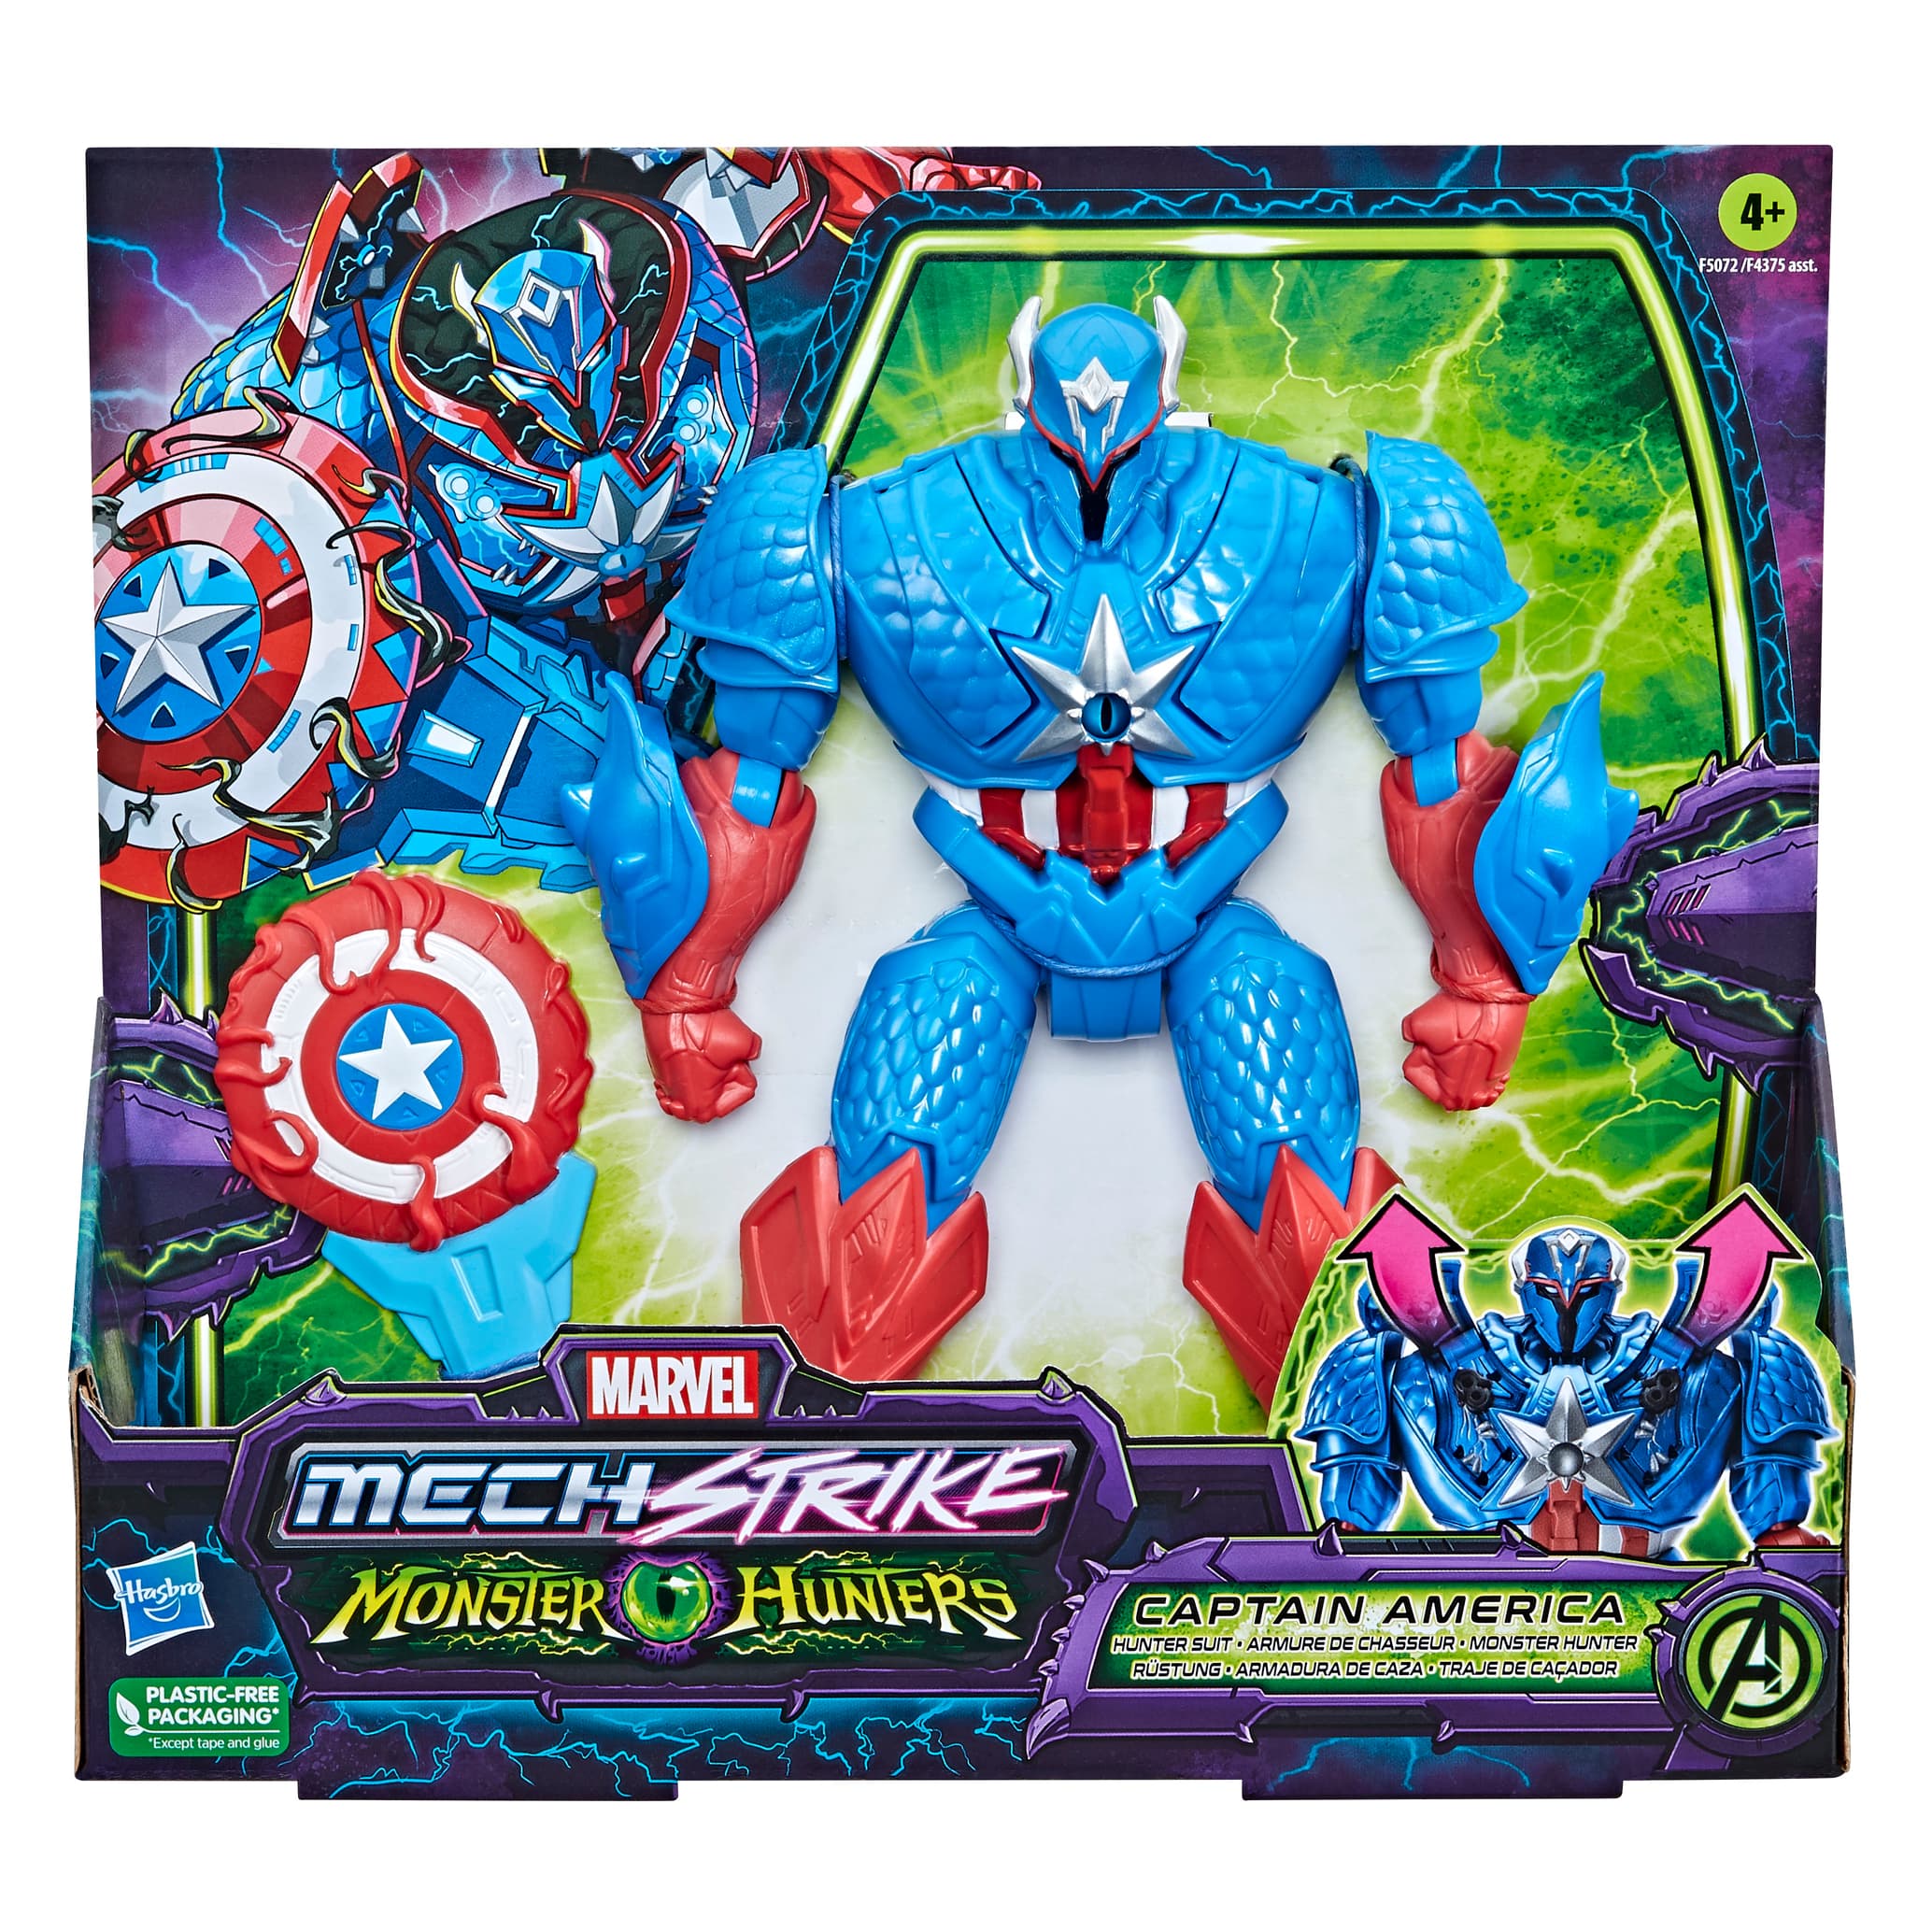 Marvel Mech Strike: Monster Hunters Captain America Toy from Hasbro